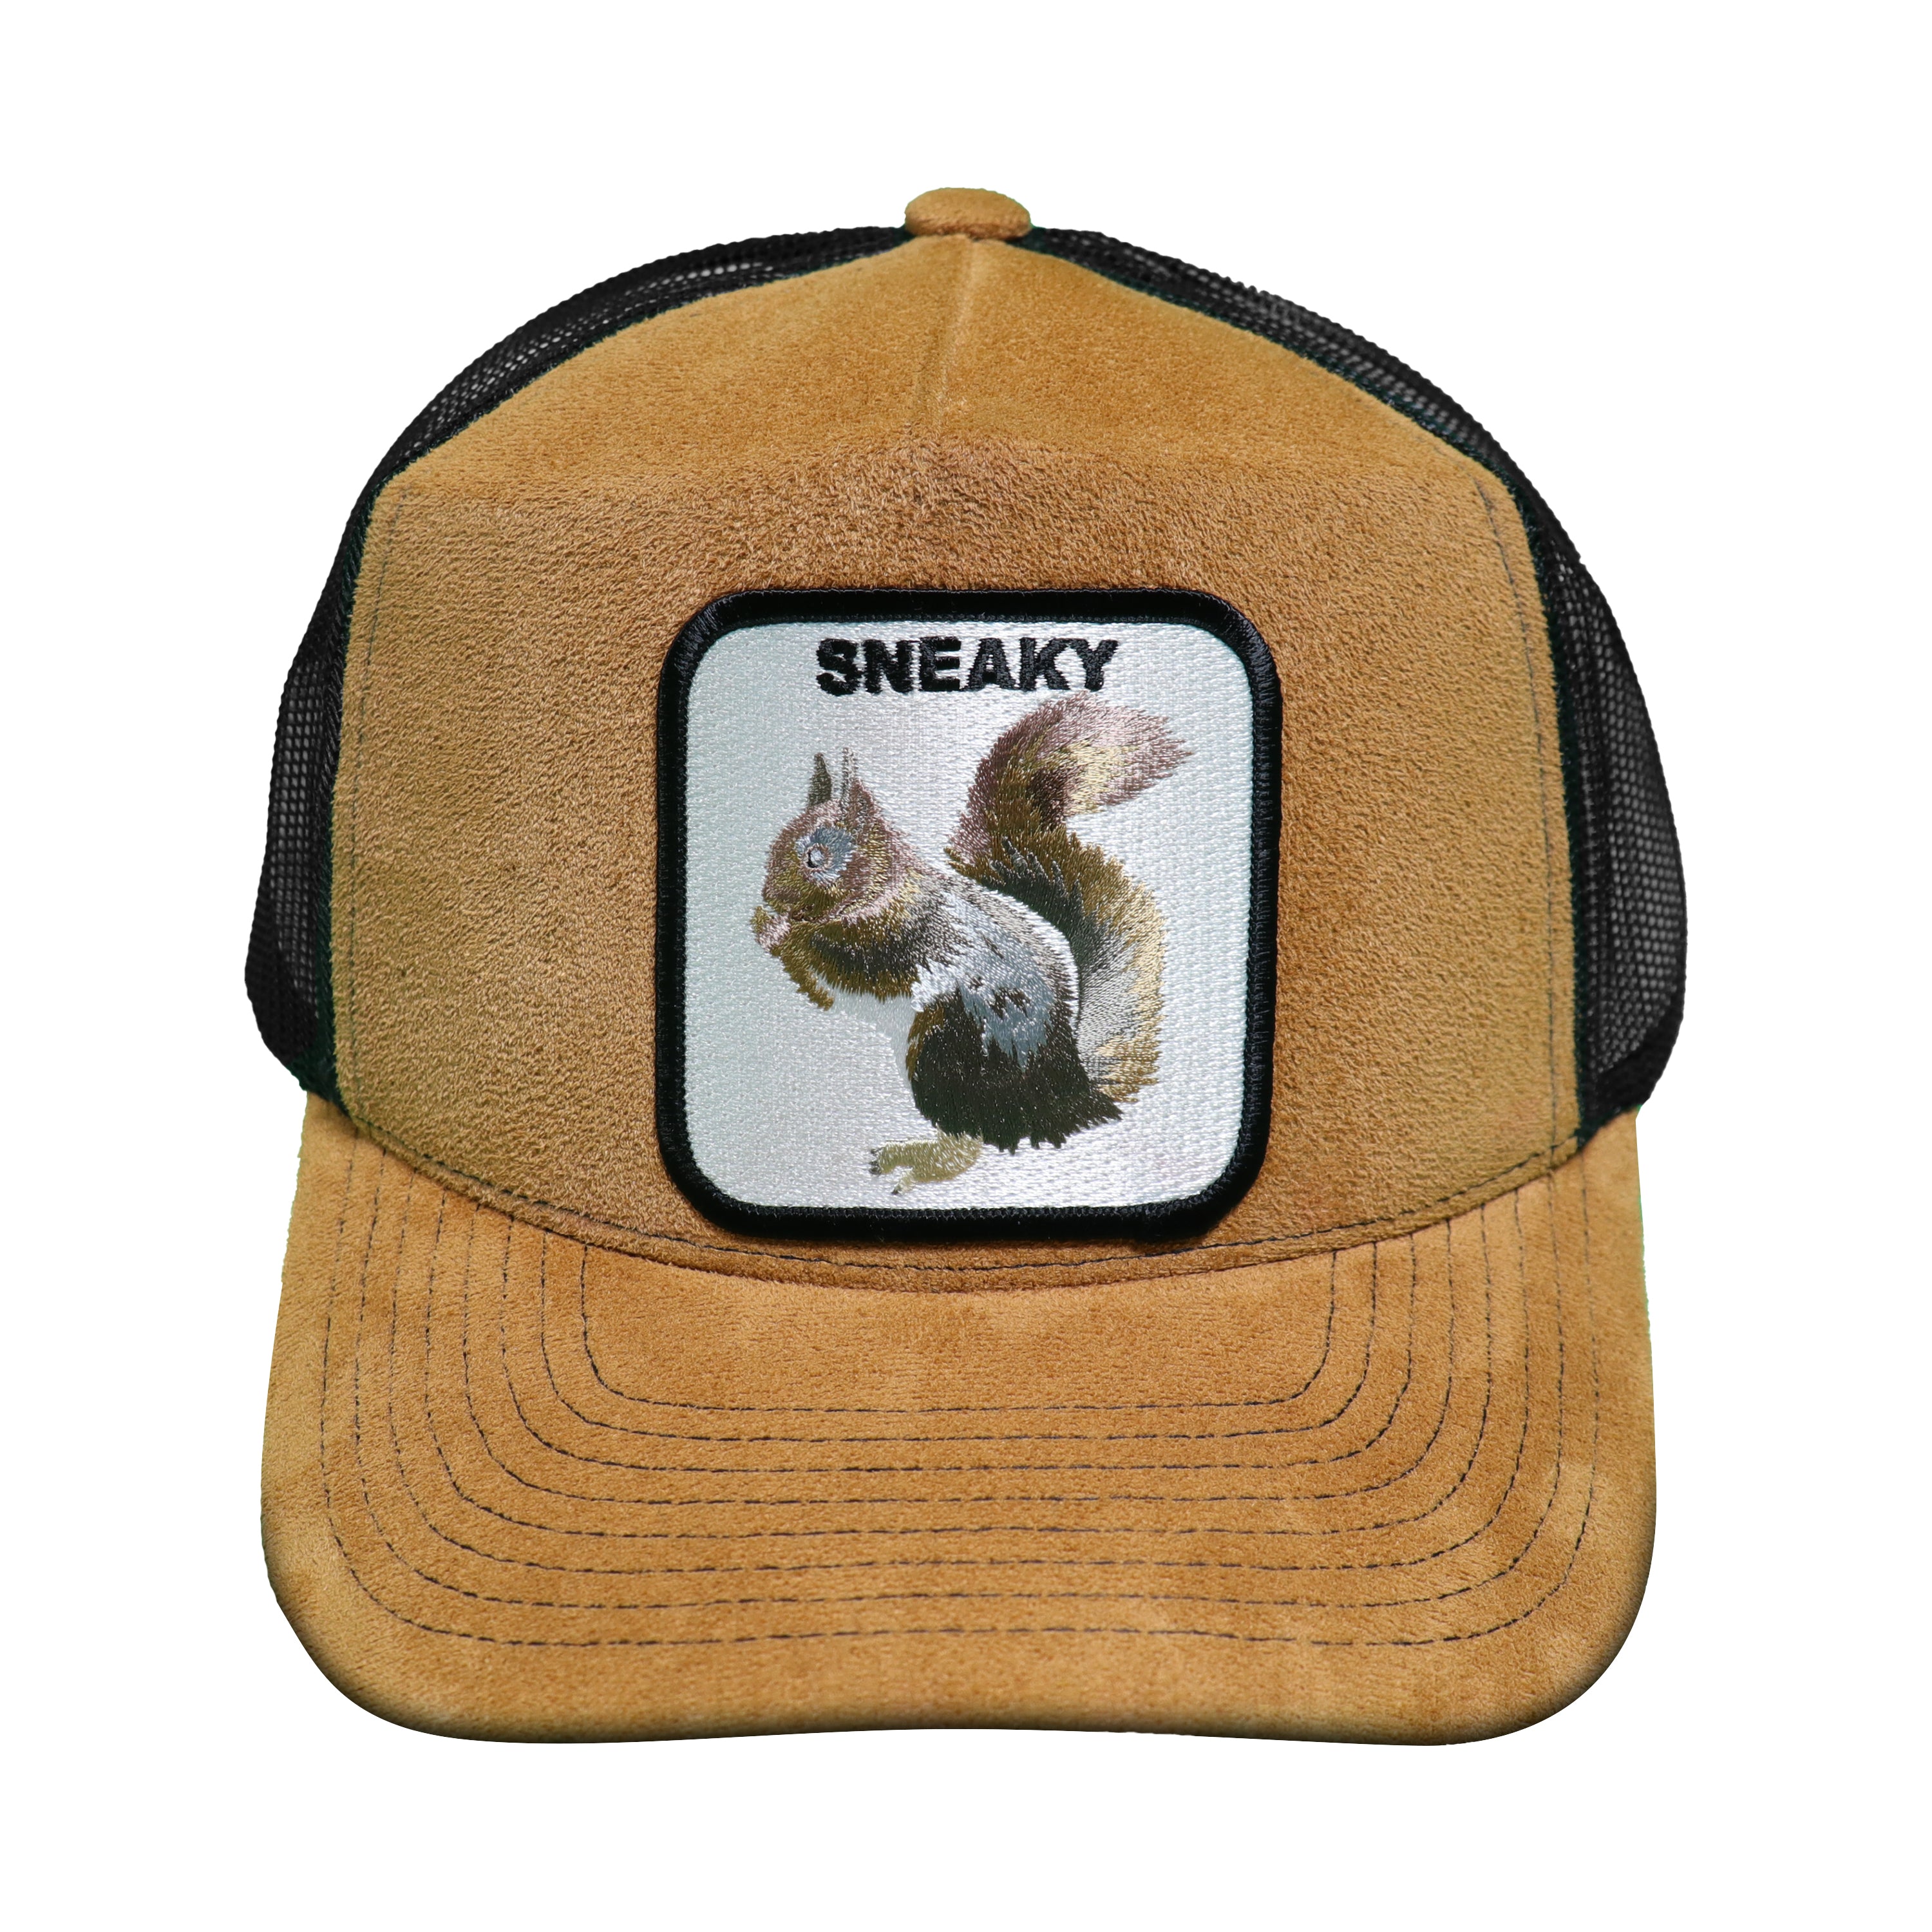 Mv sneaky trucker hat